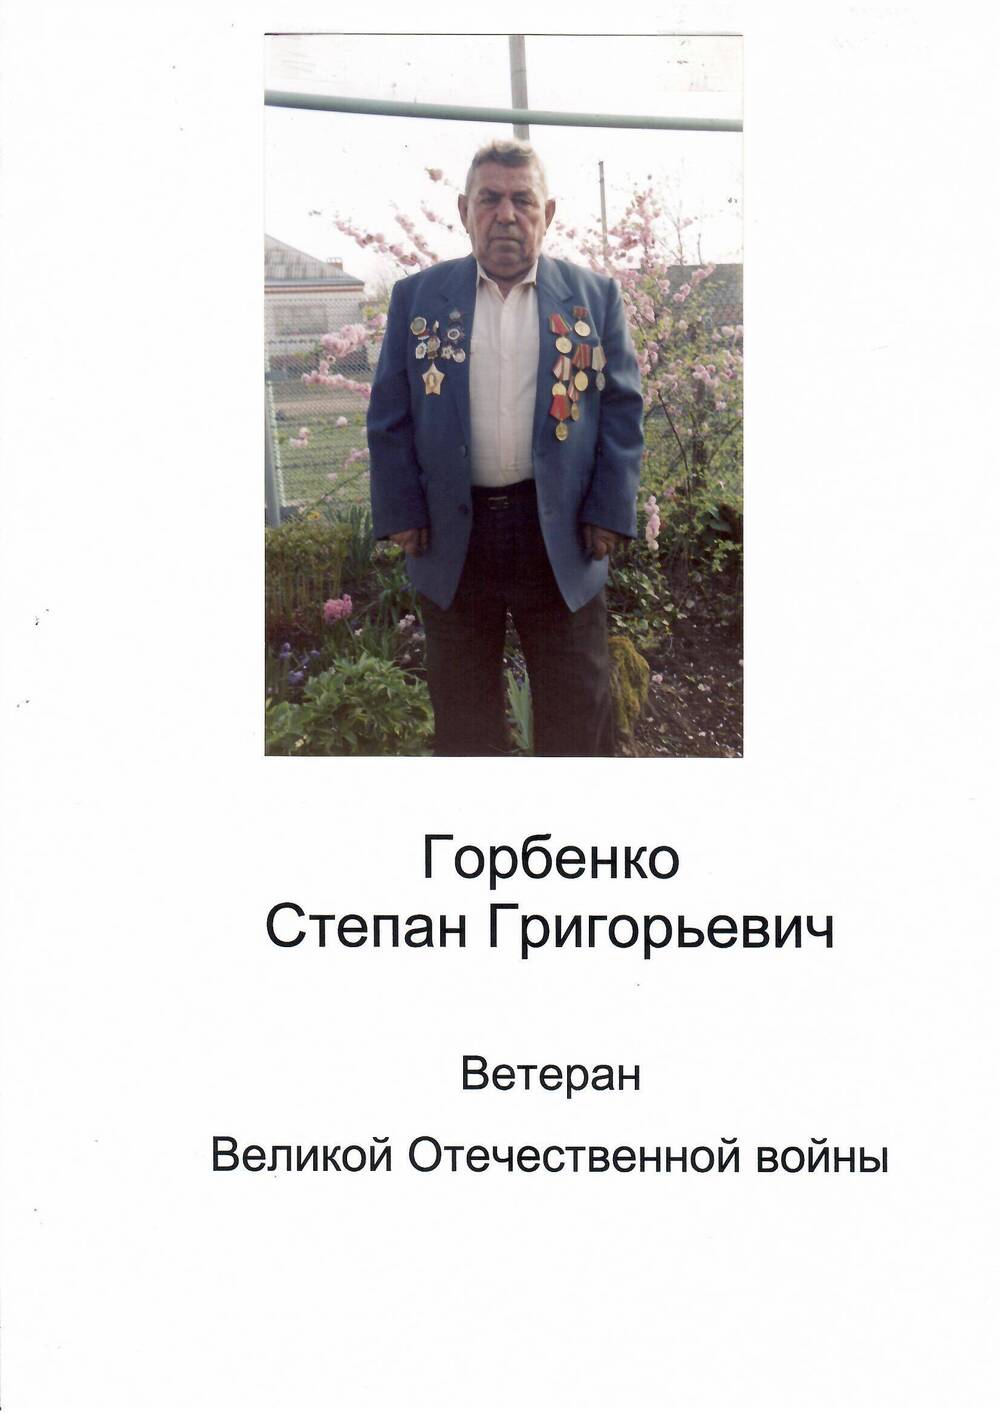 Фото цветное. Горбенко Степан Григорьевич-ветеран ВОВ.